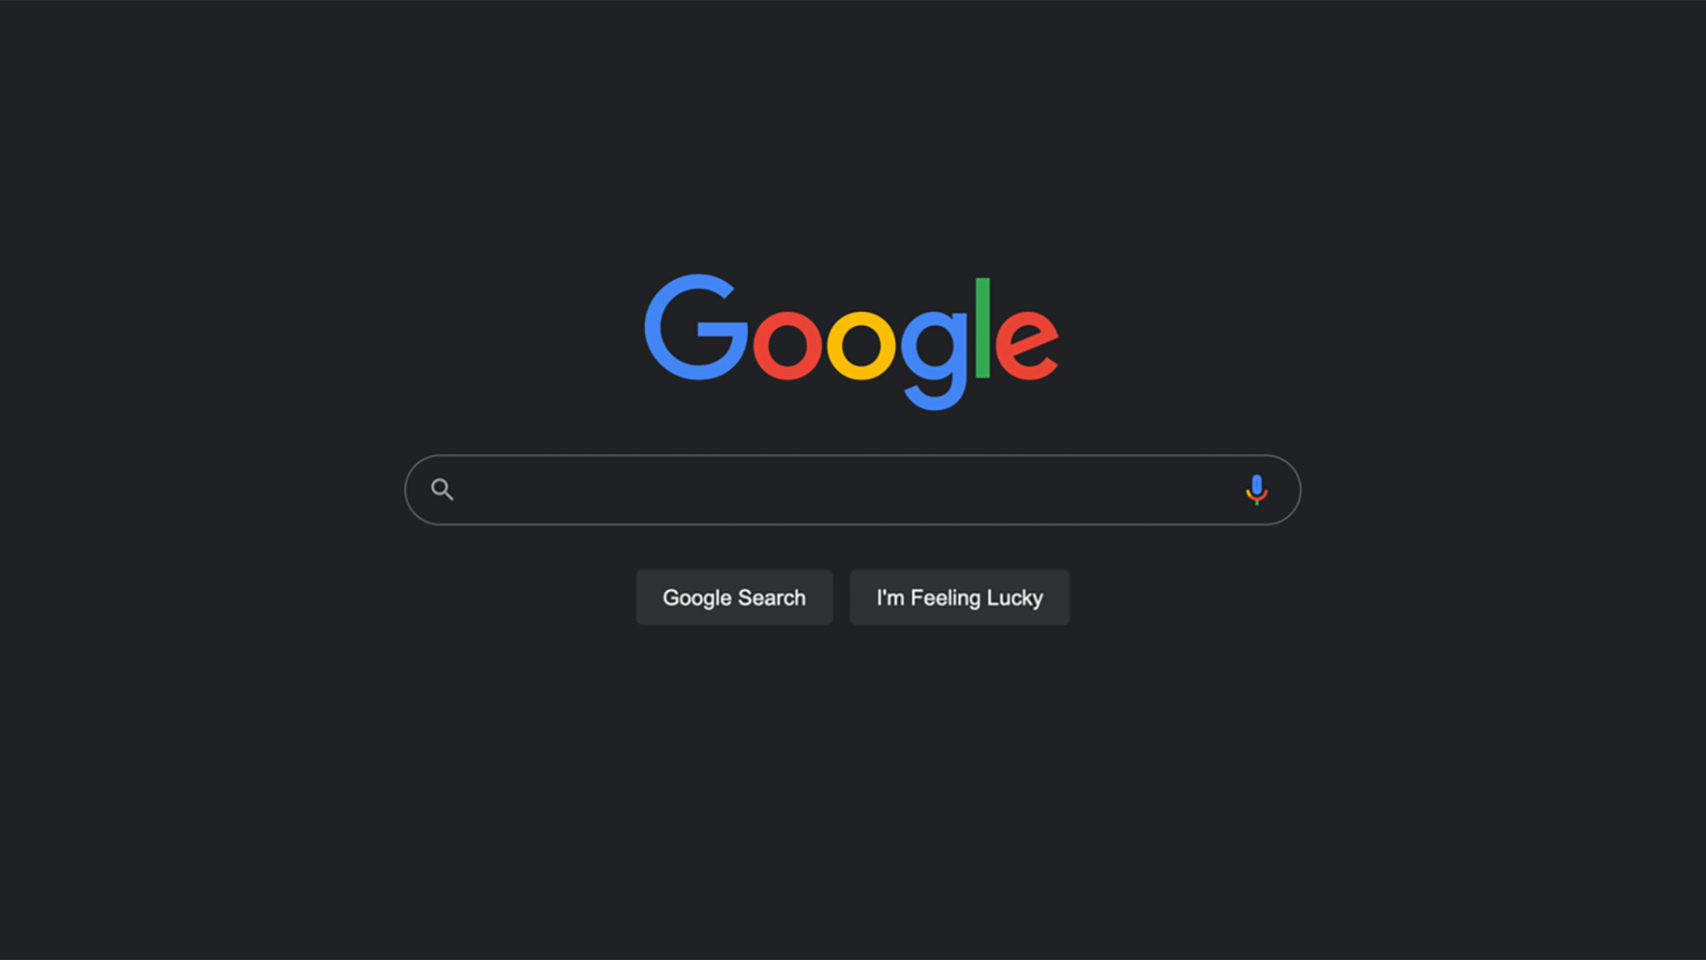 Google Modo Oscuro